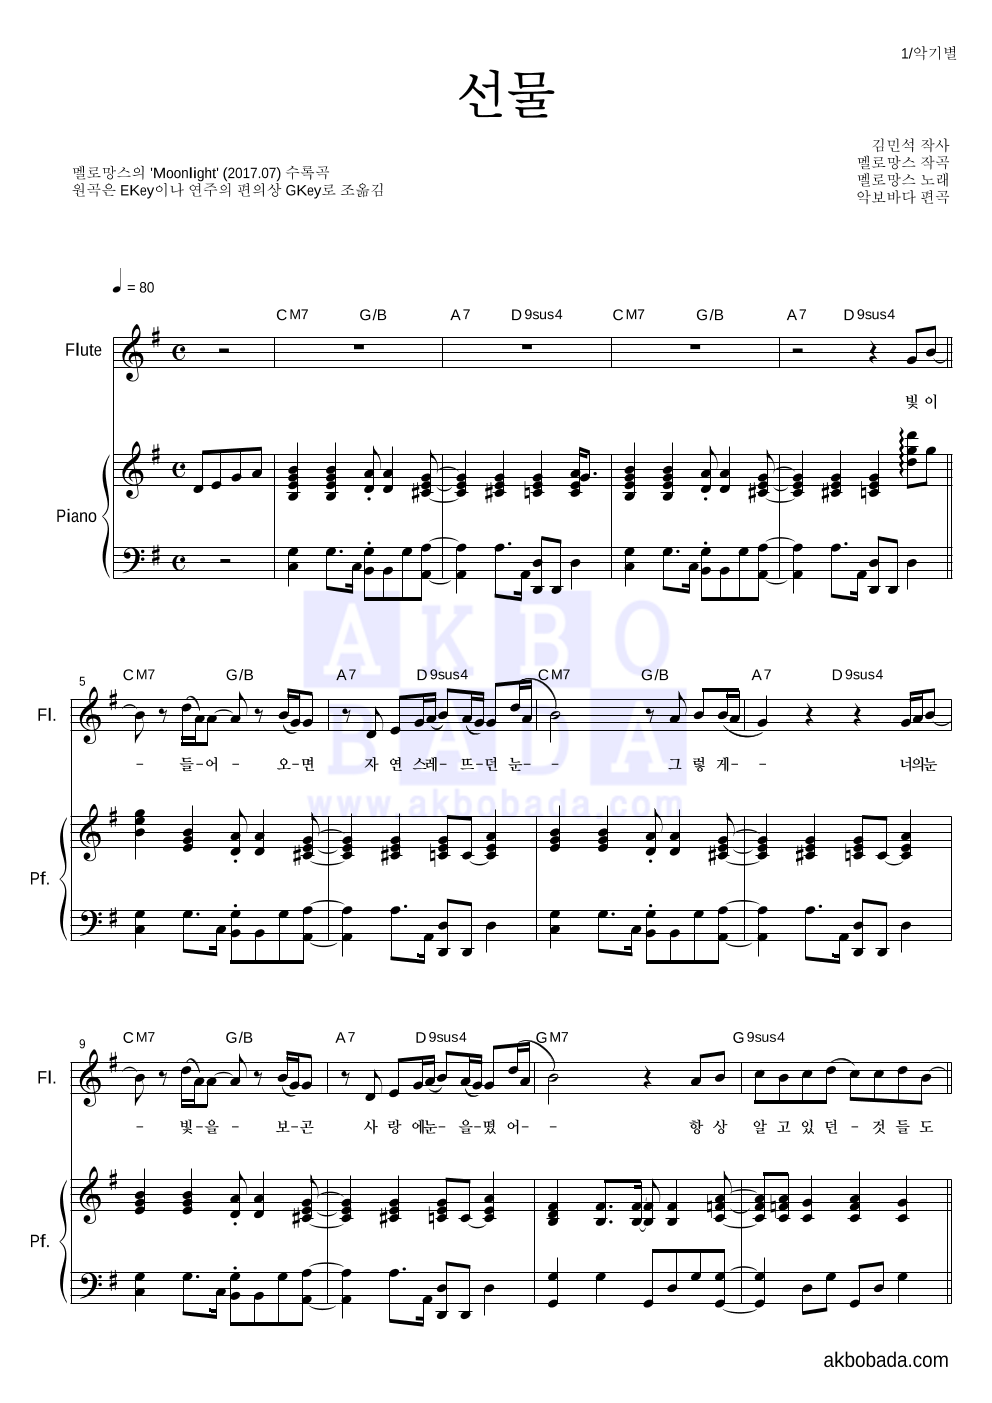 멜로망스 - 선물 플룻&피아노 악보 